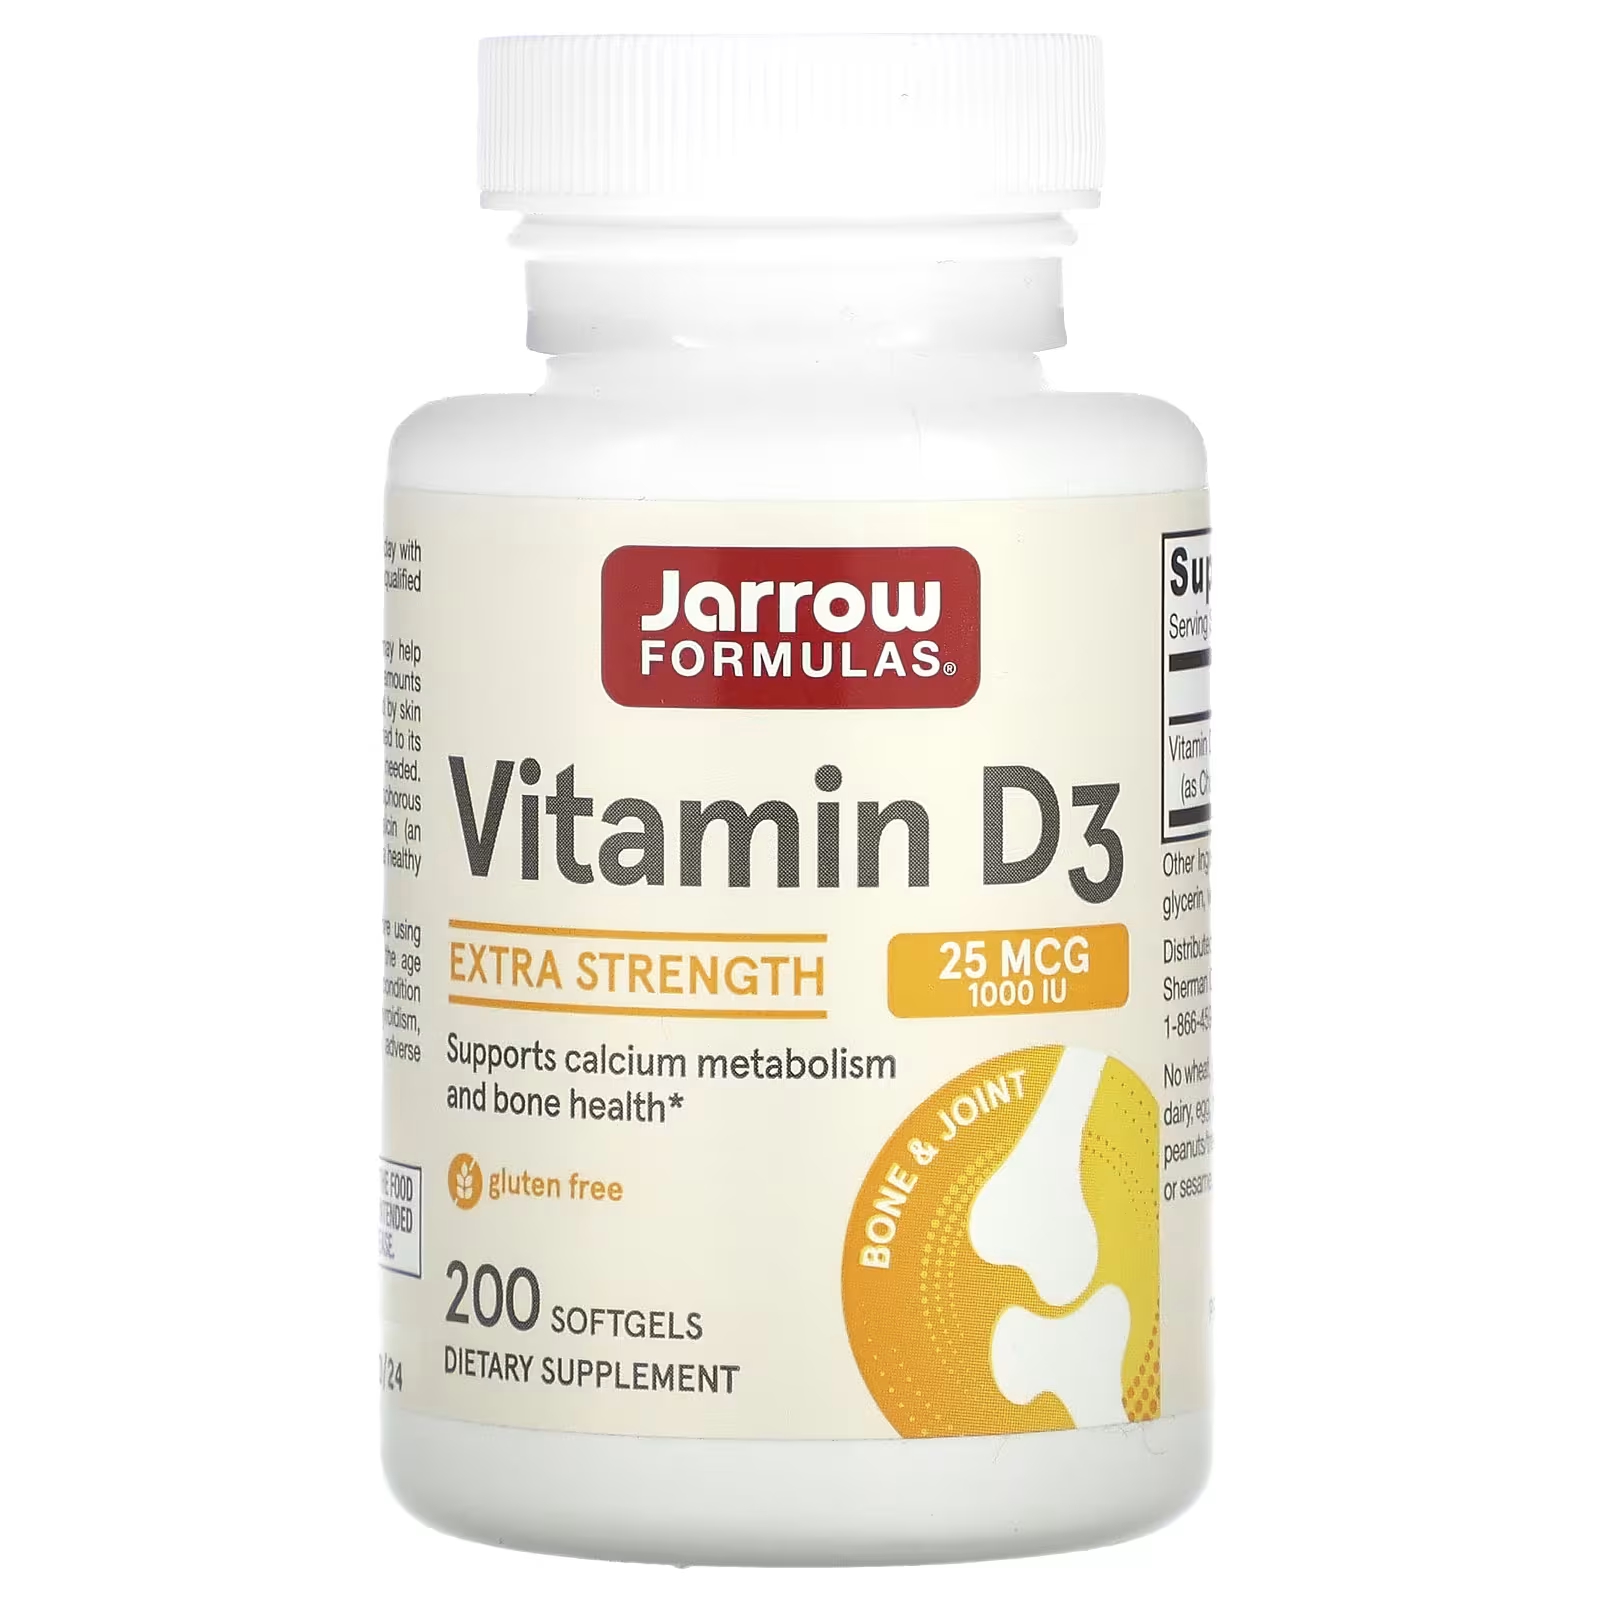 Витамин D3 Jarrow Formulas холекальциферол повышенной силы, 200 мягких таблеток цена и фото